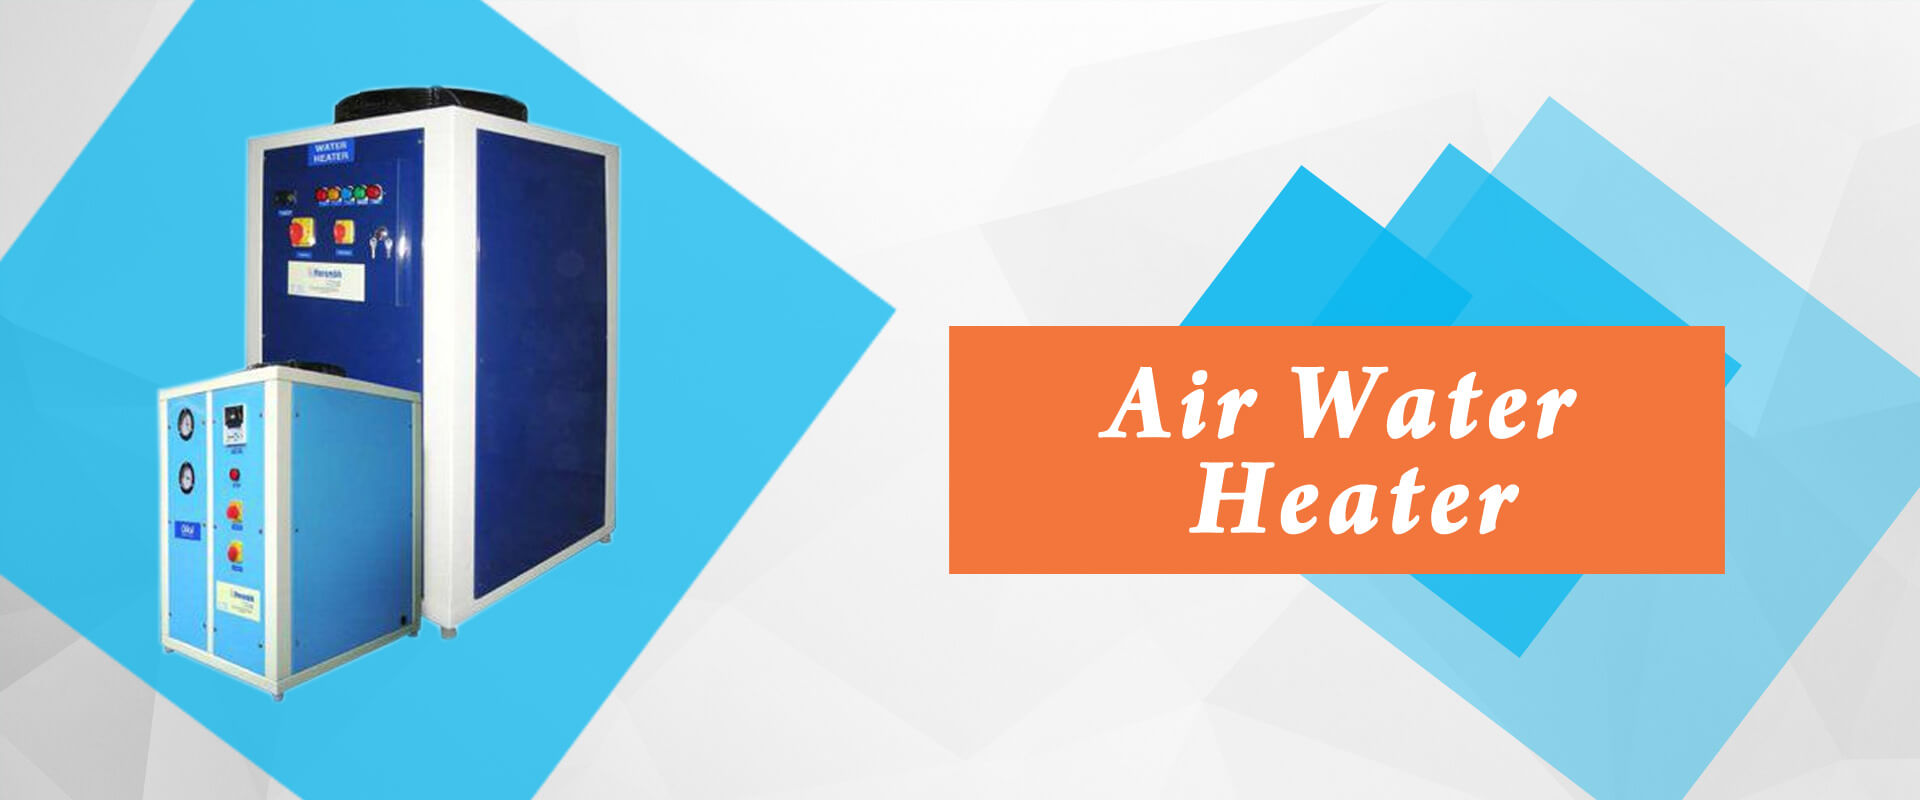 Air Water Heater